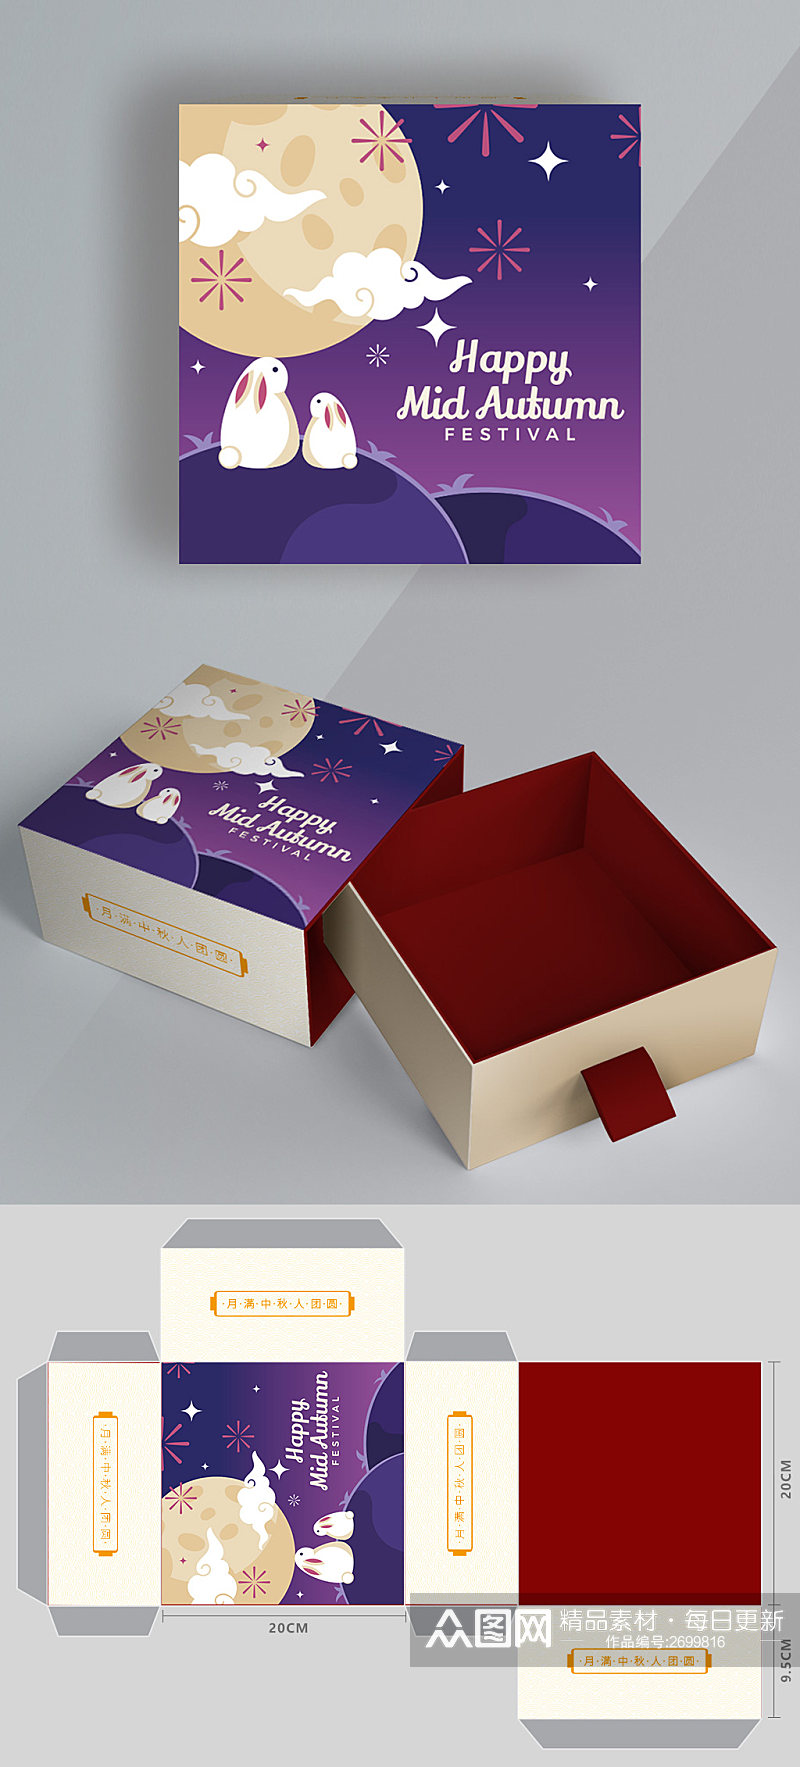 中秋节矢量手绘正方形月饼礼盒包装设计素材